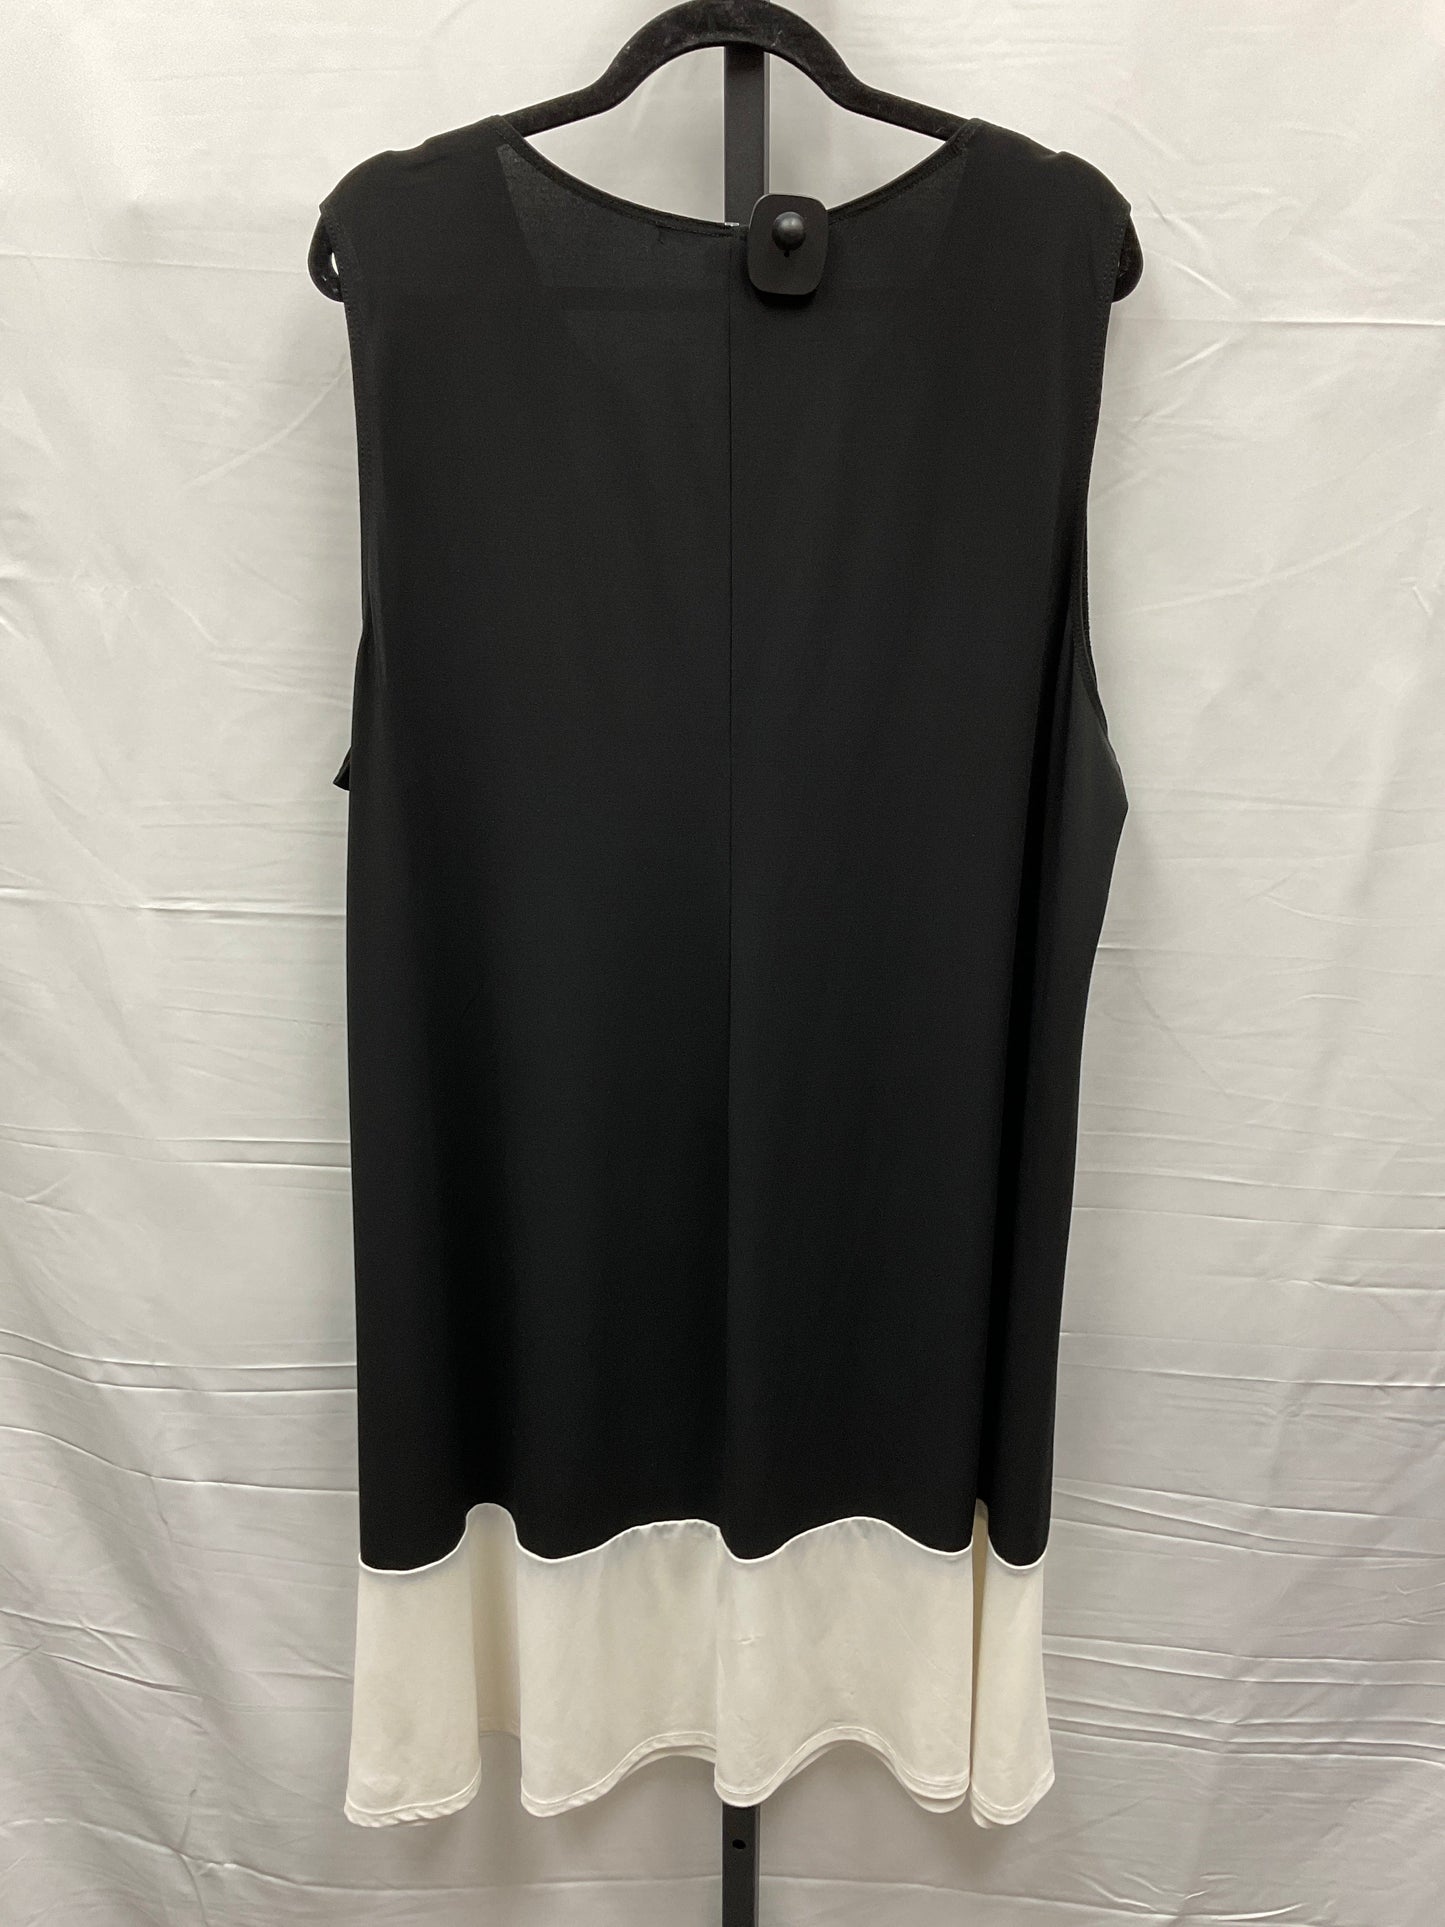 Dress Casual Midi By Tiana B  Size: 3x